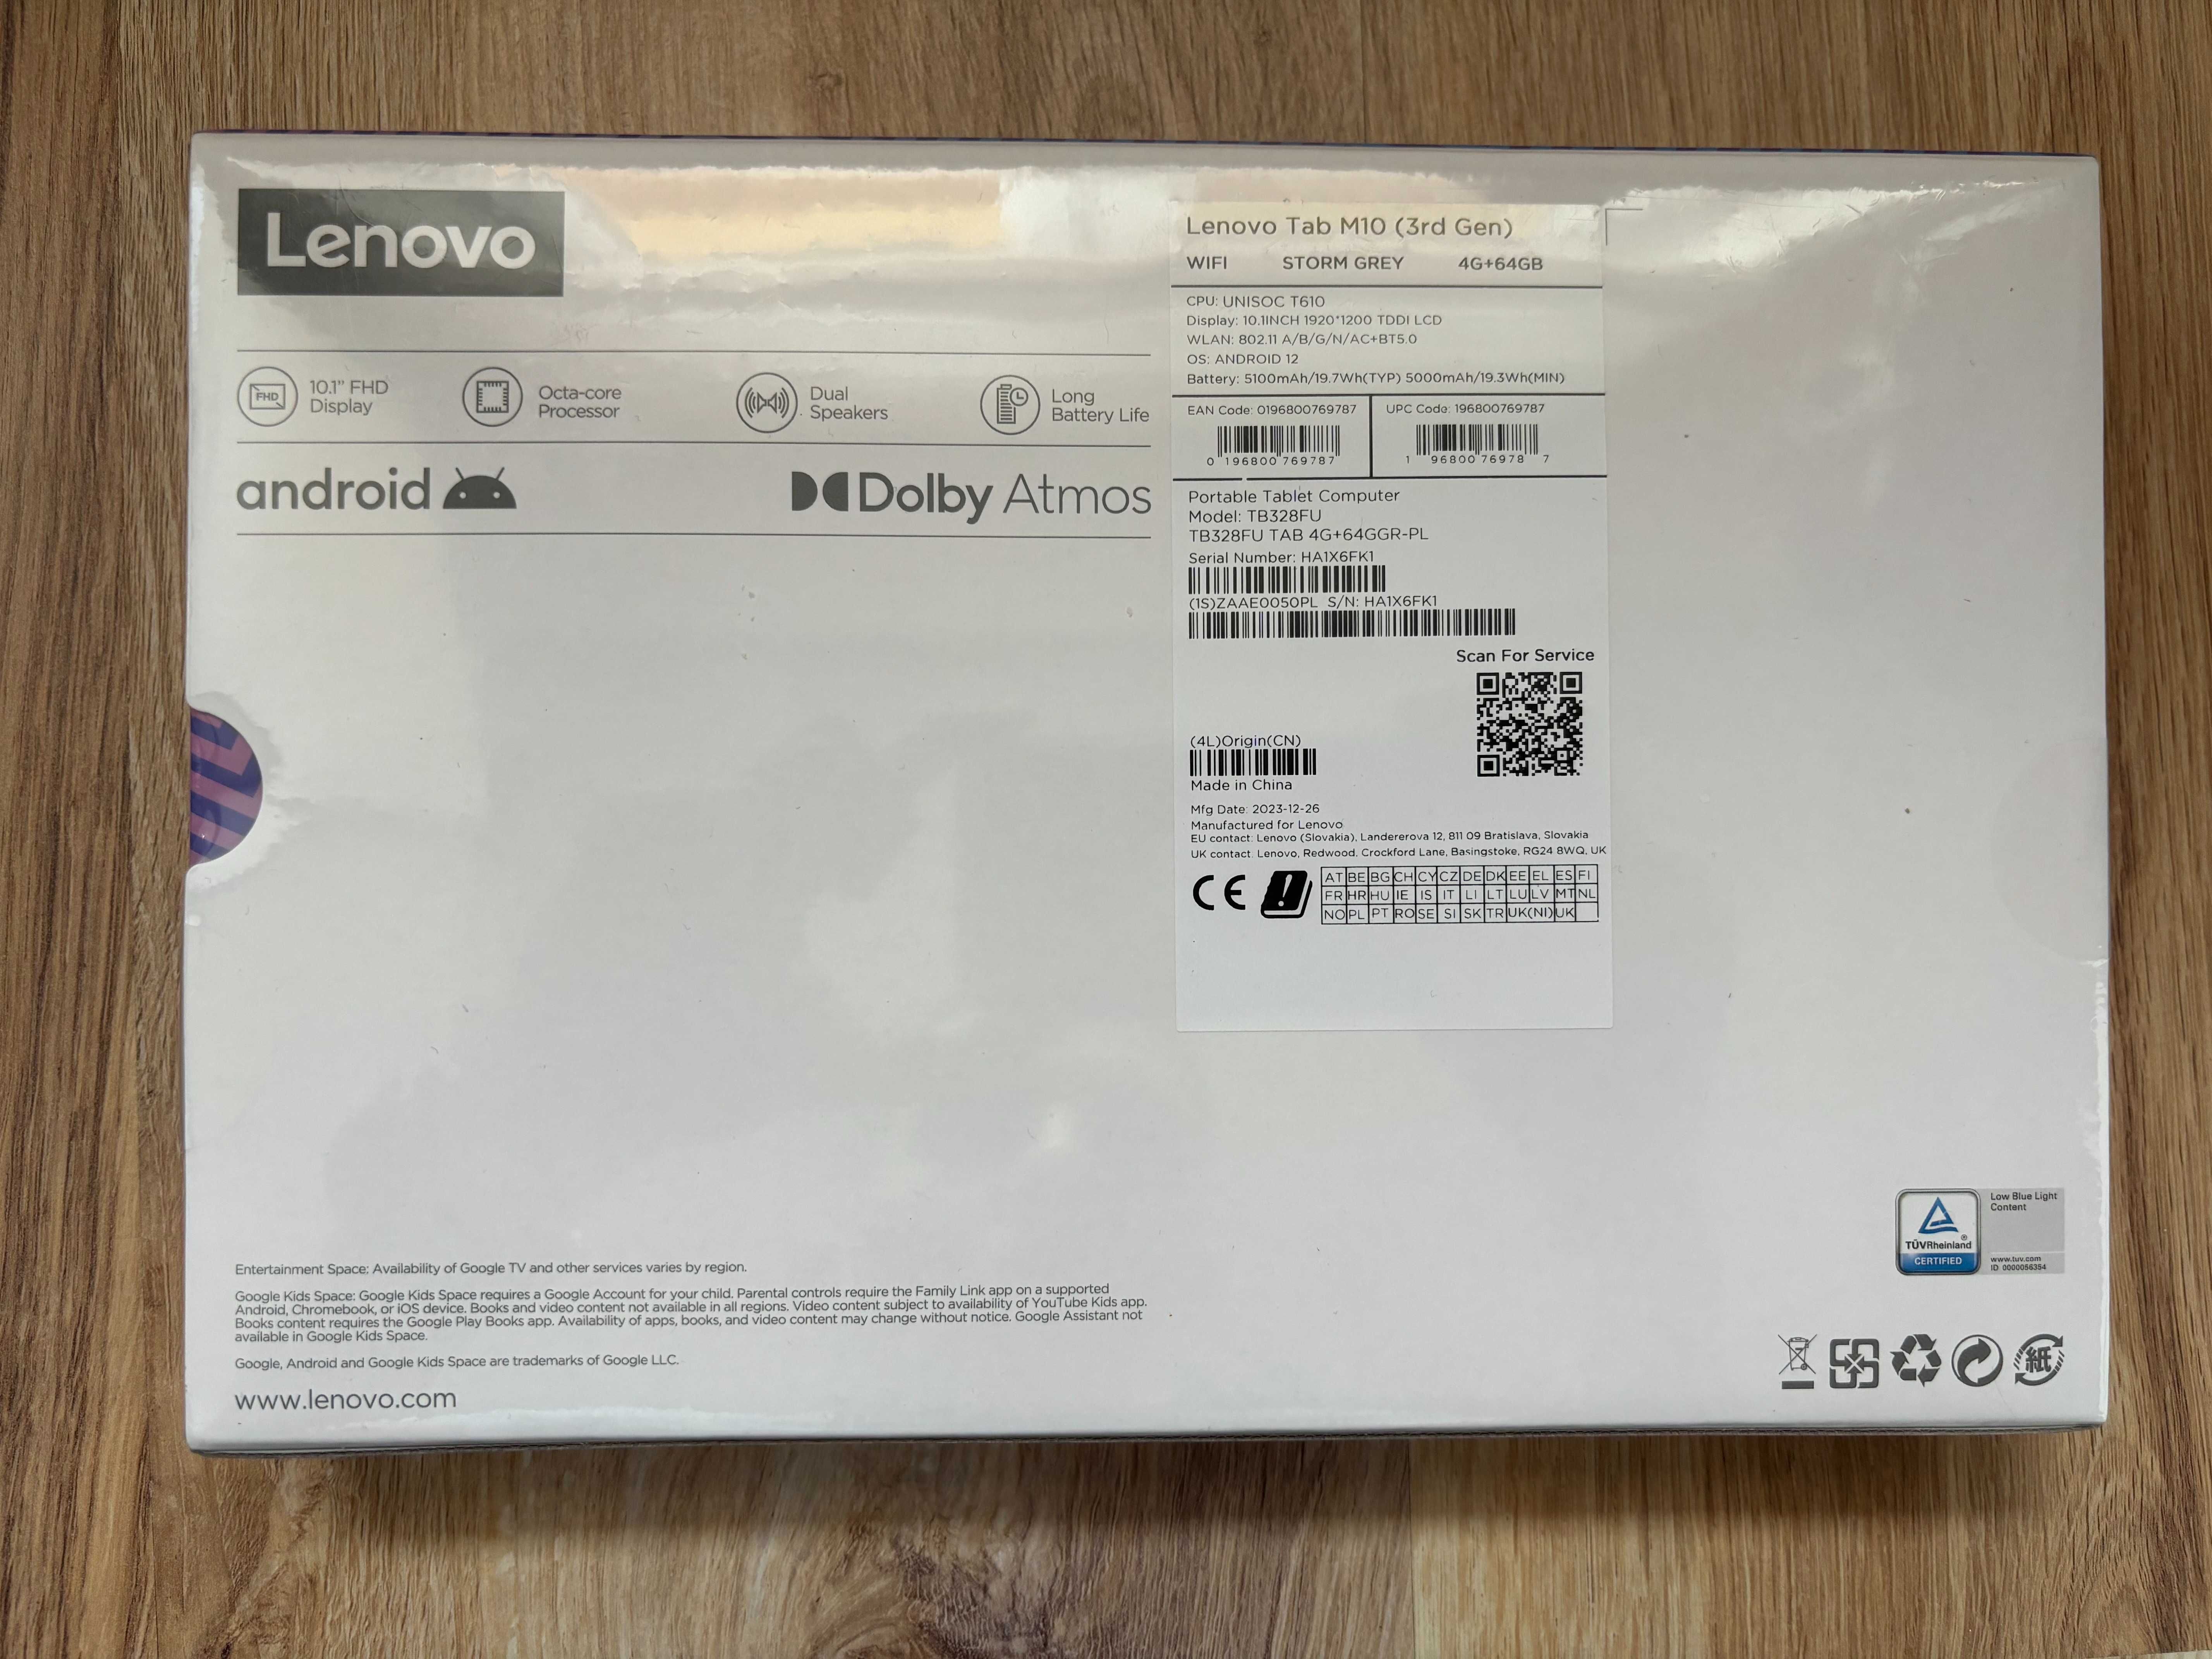 Tablet Lenovo M10 (3rd Gen)